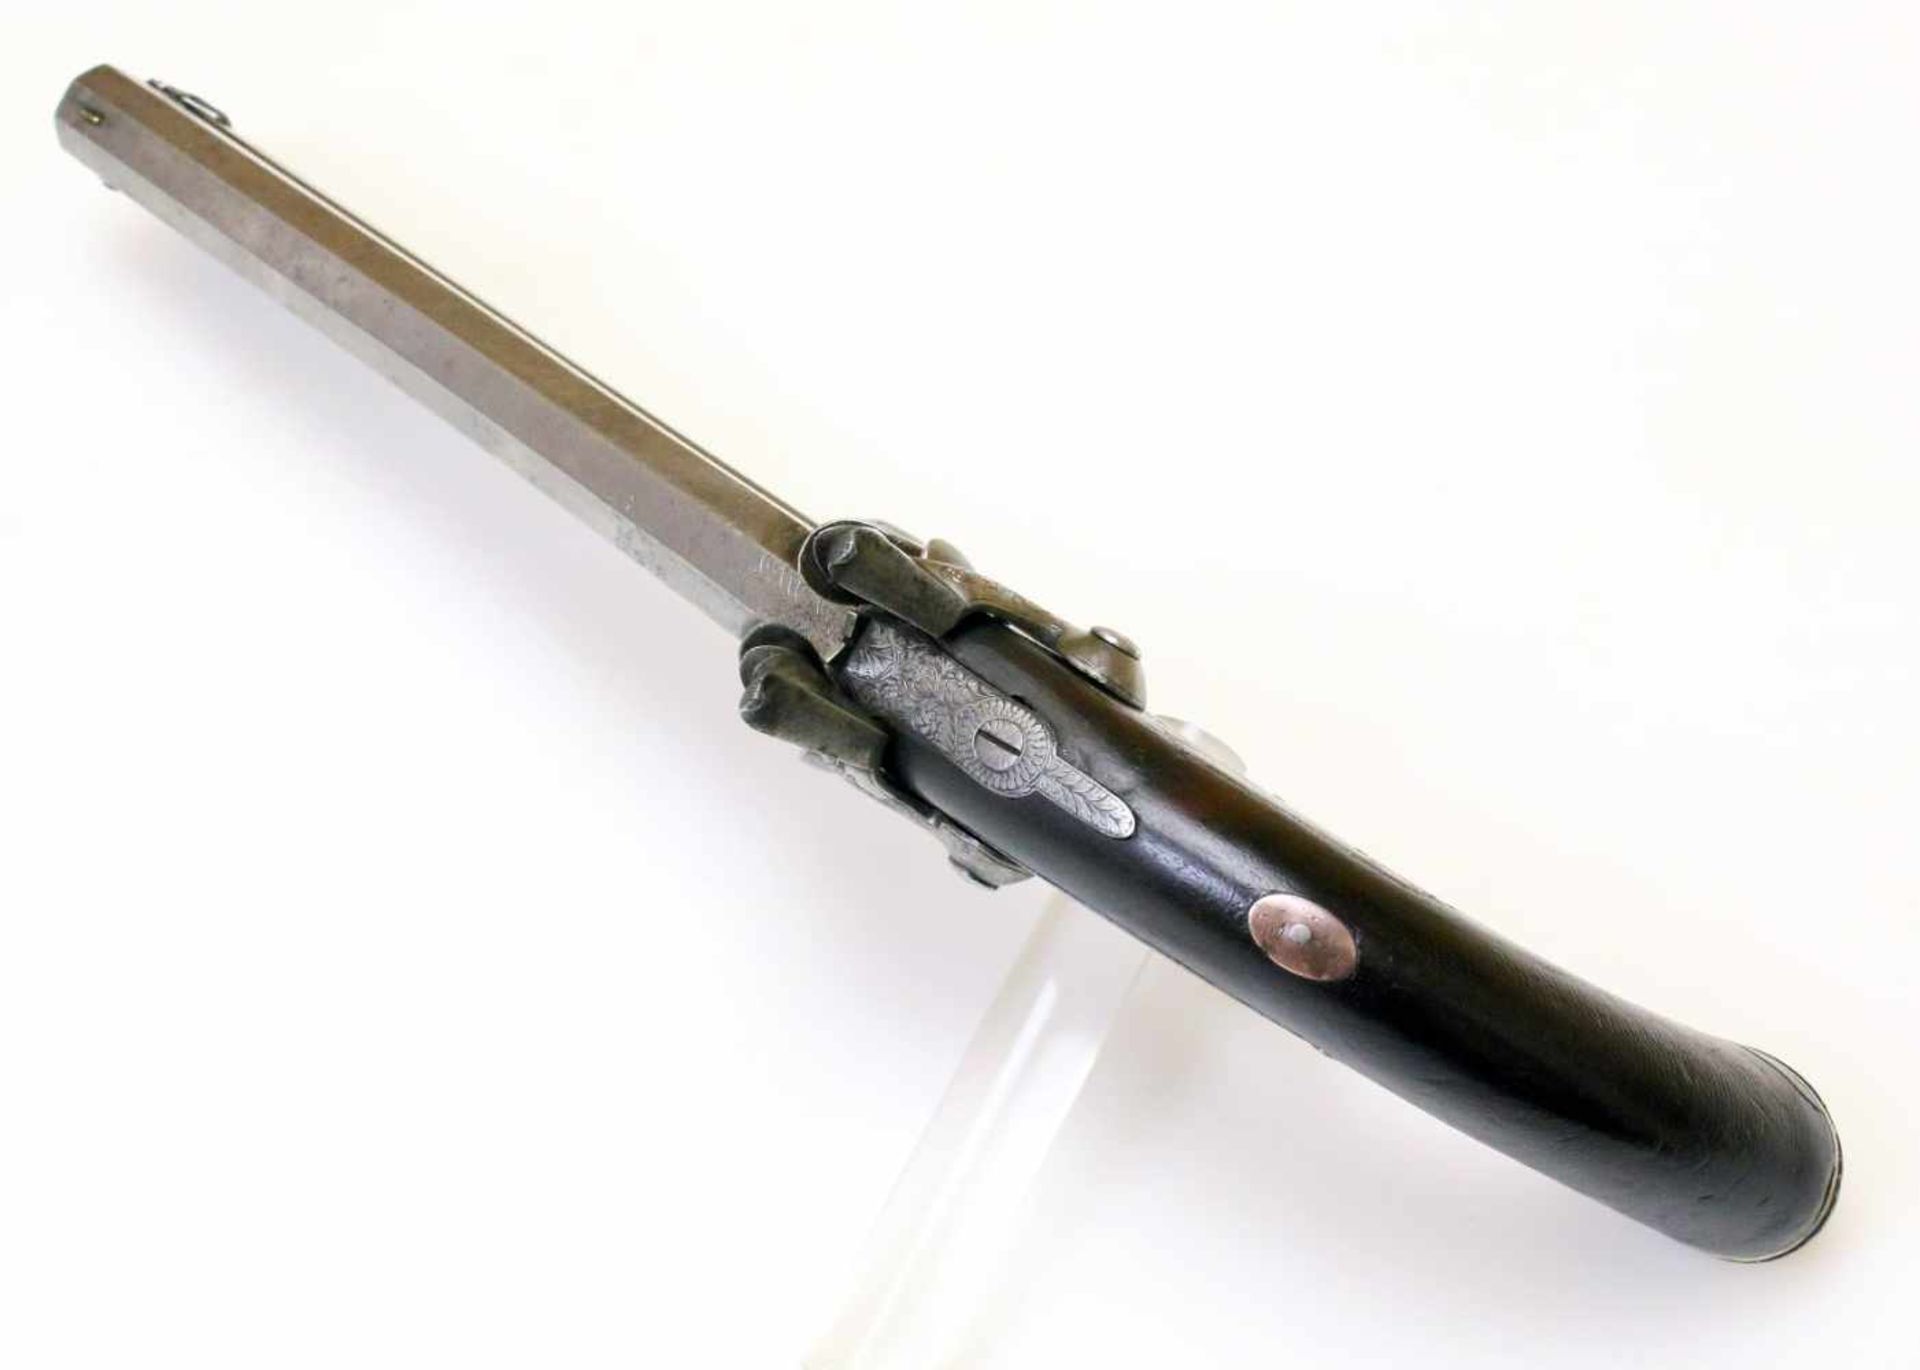 Doppelläufige Perkussionspistole - England um 1850 Cal. 14mm Perk., Zustand 2. Zwei übereinander - Bild 7 aus 15